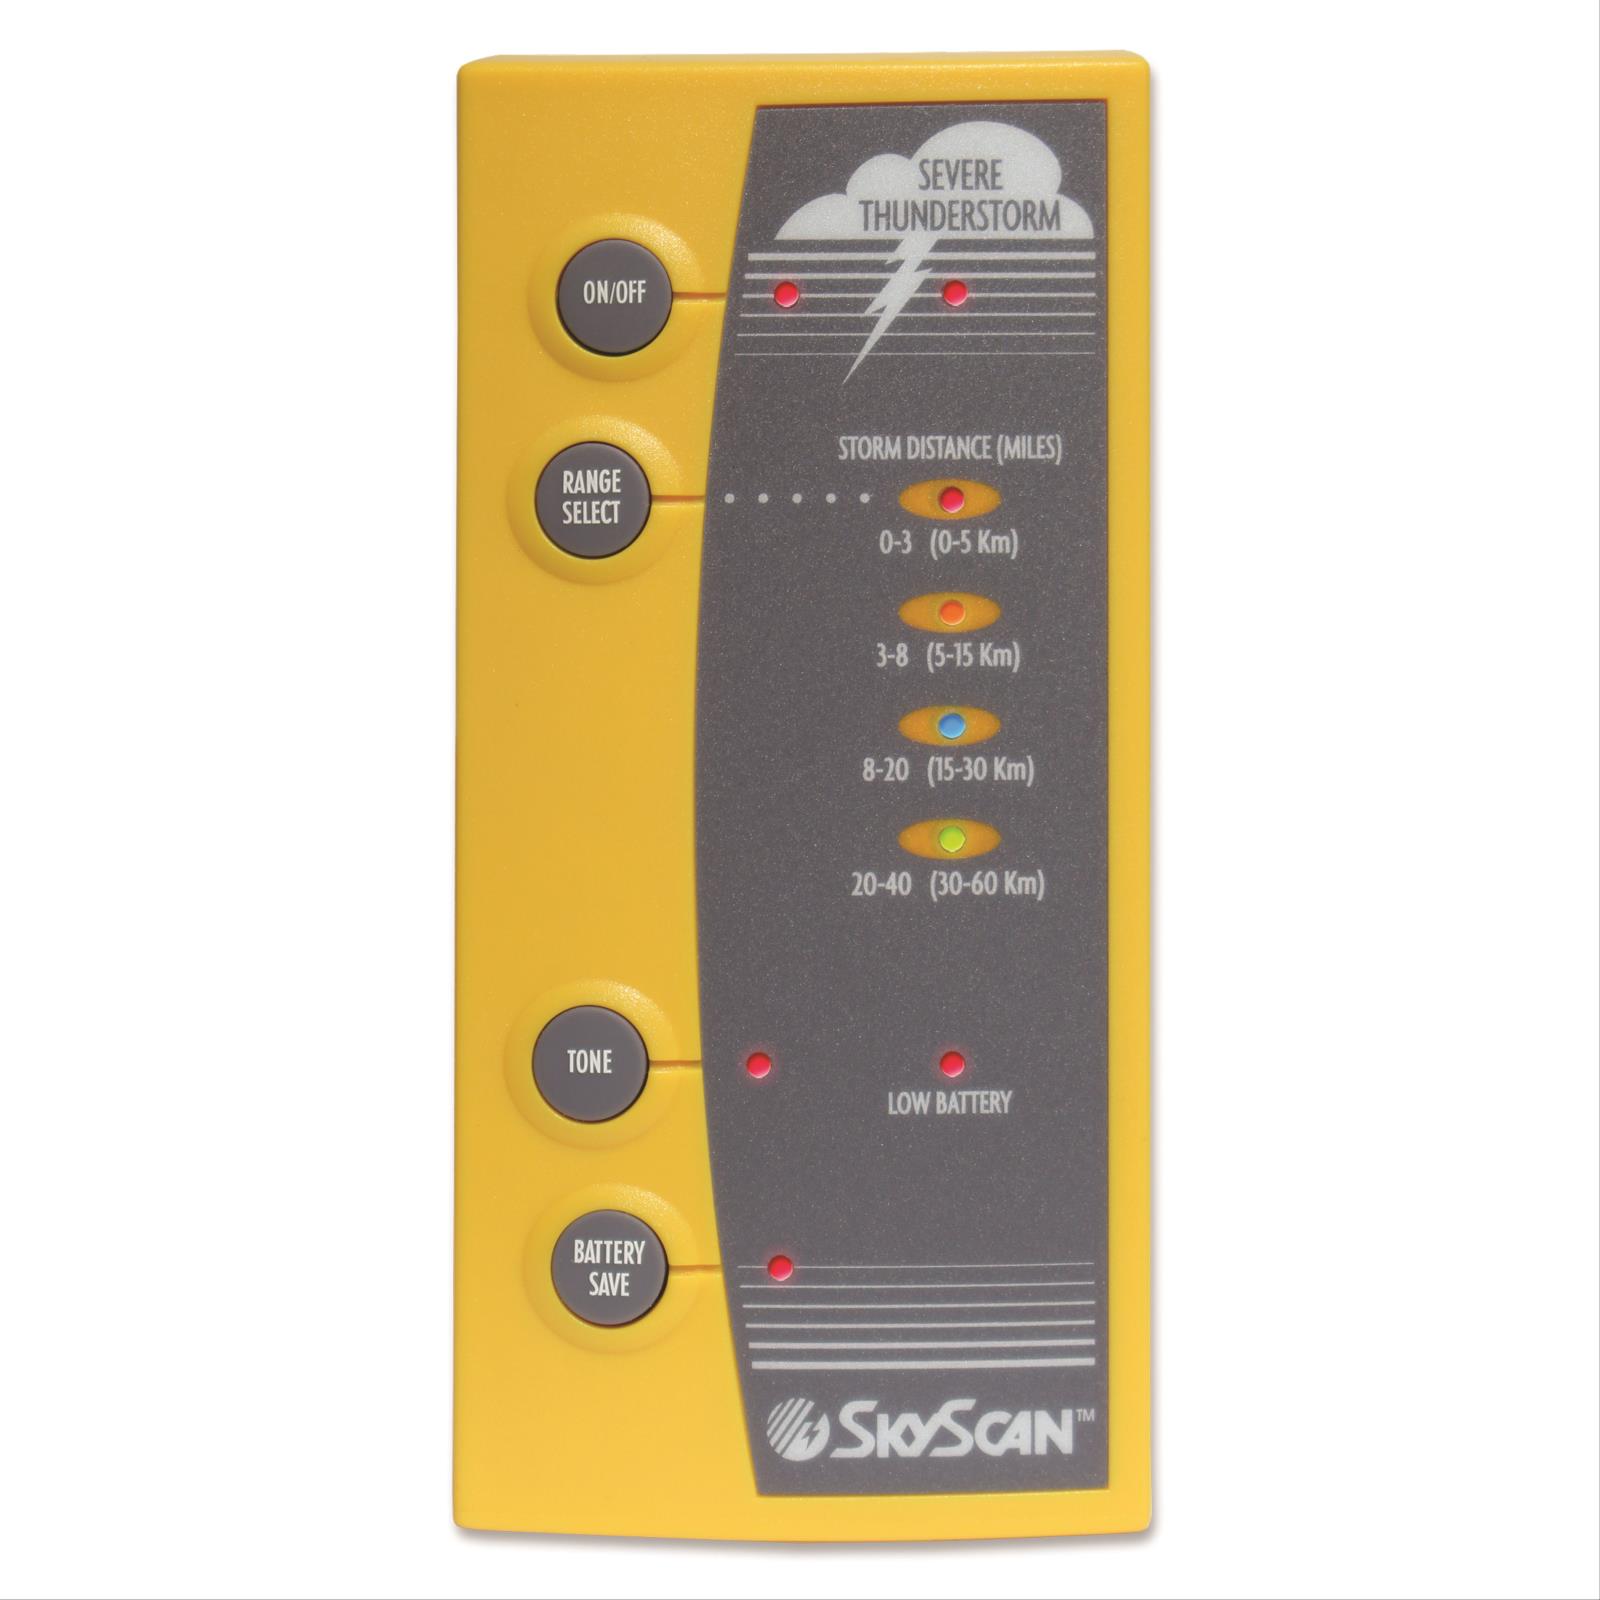 SkyScan™ Lightning Detector